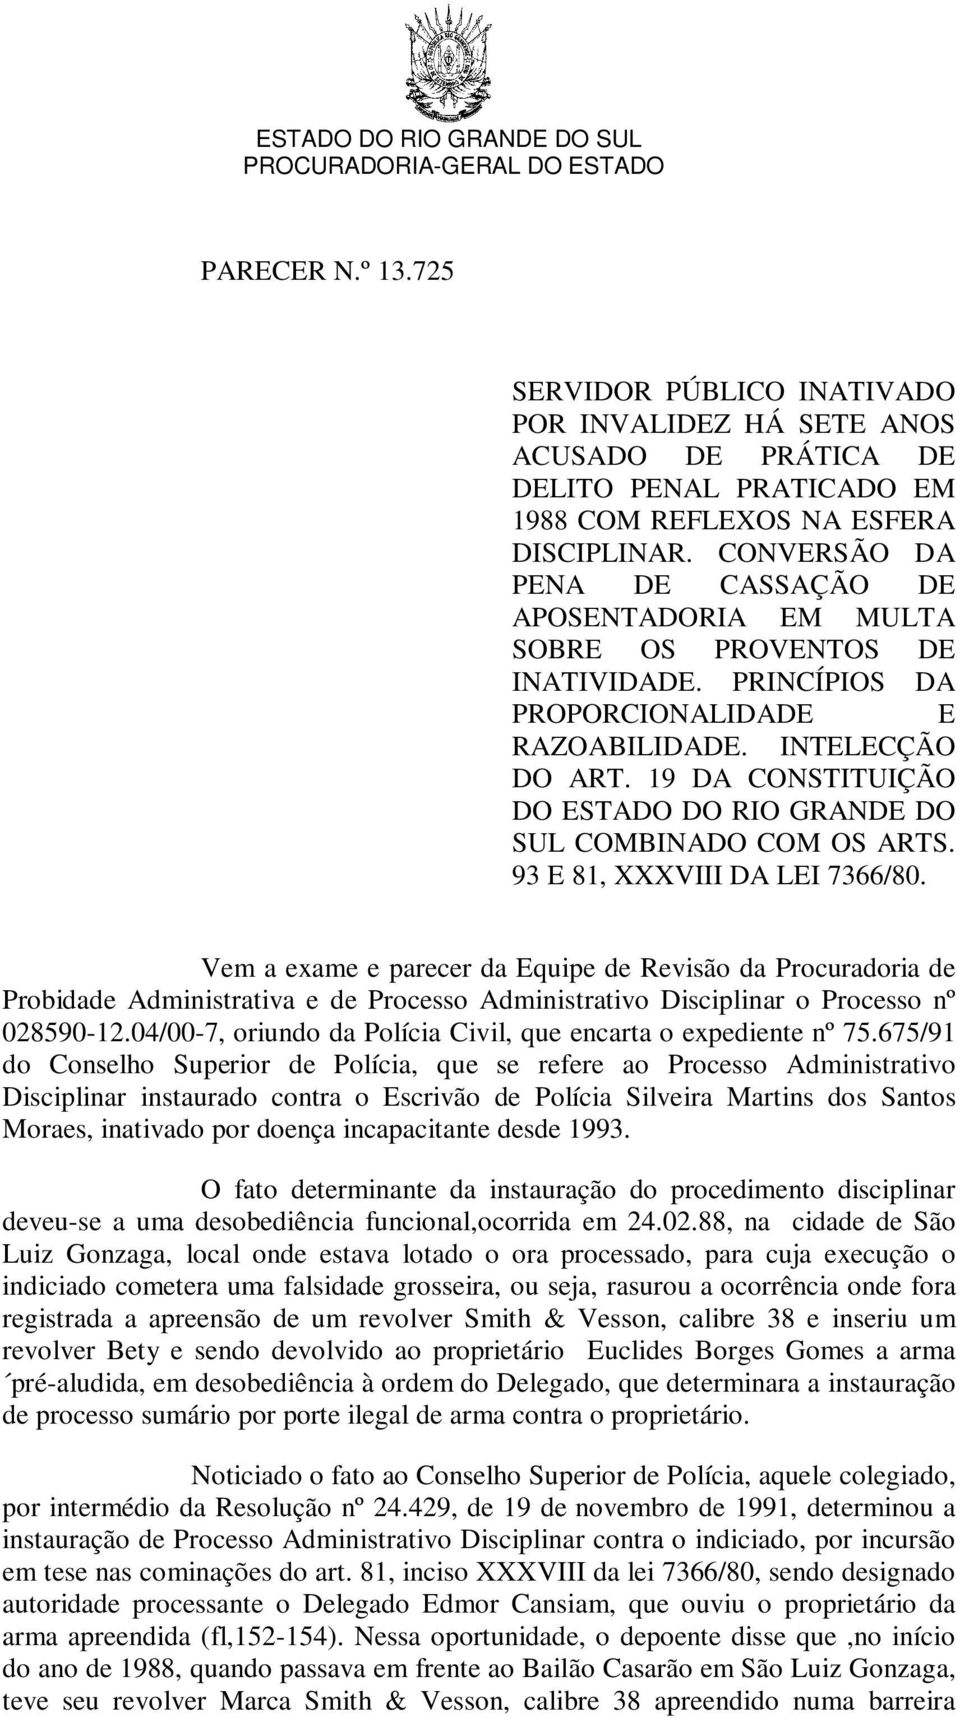 19 DA CONSTITUIÇÃO DO ESTADO DO RIO GRANDE DO SUL COMBINADO COM OS ARTS. 93 E 81, XXXVIII DA LEI 7366/80.